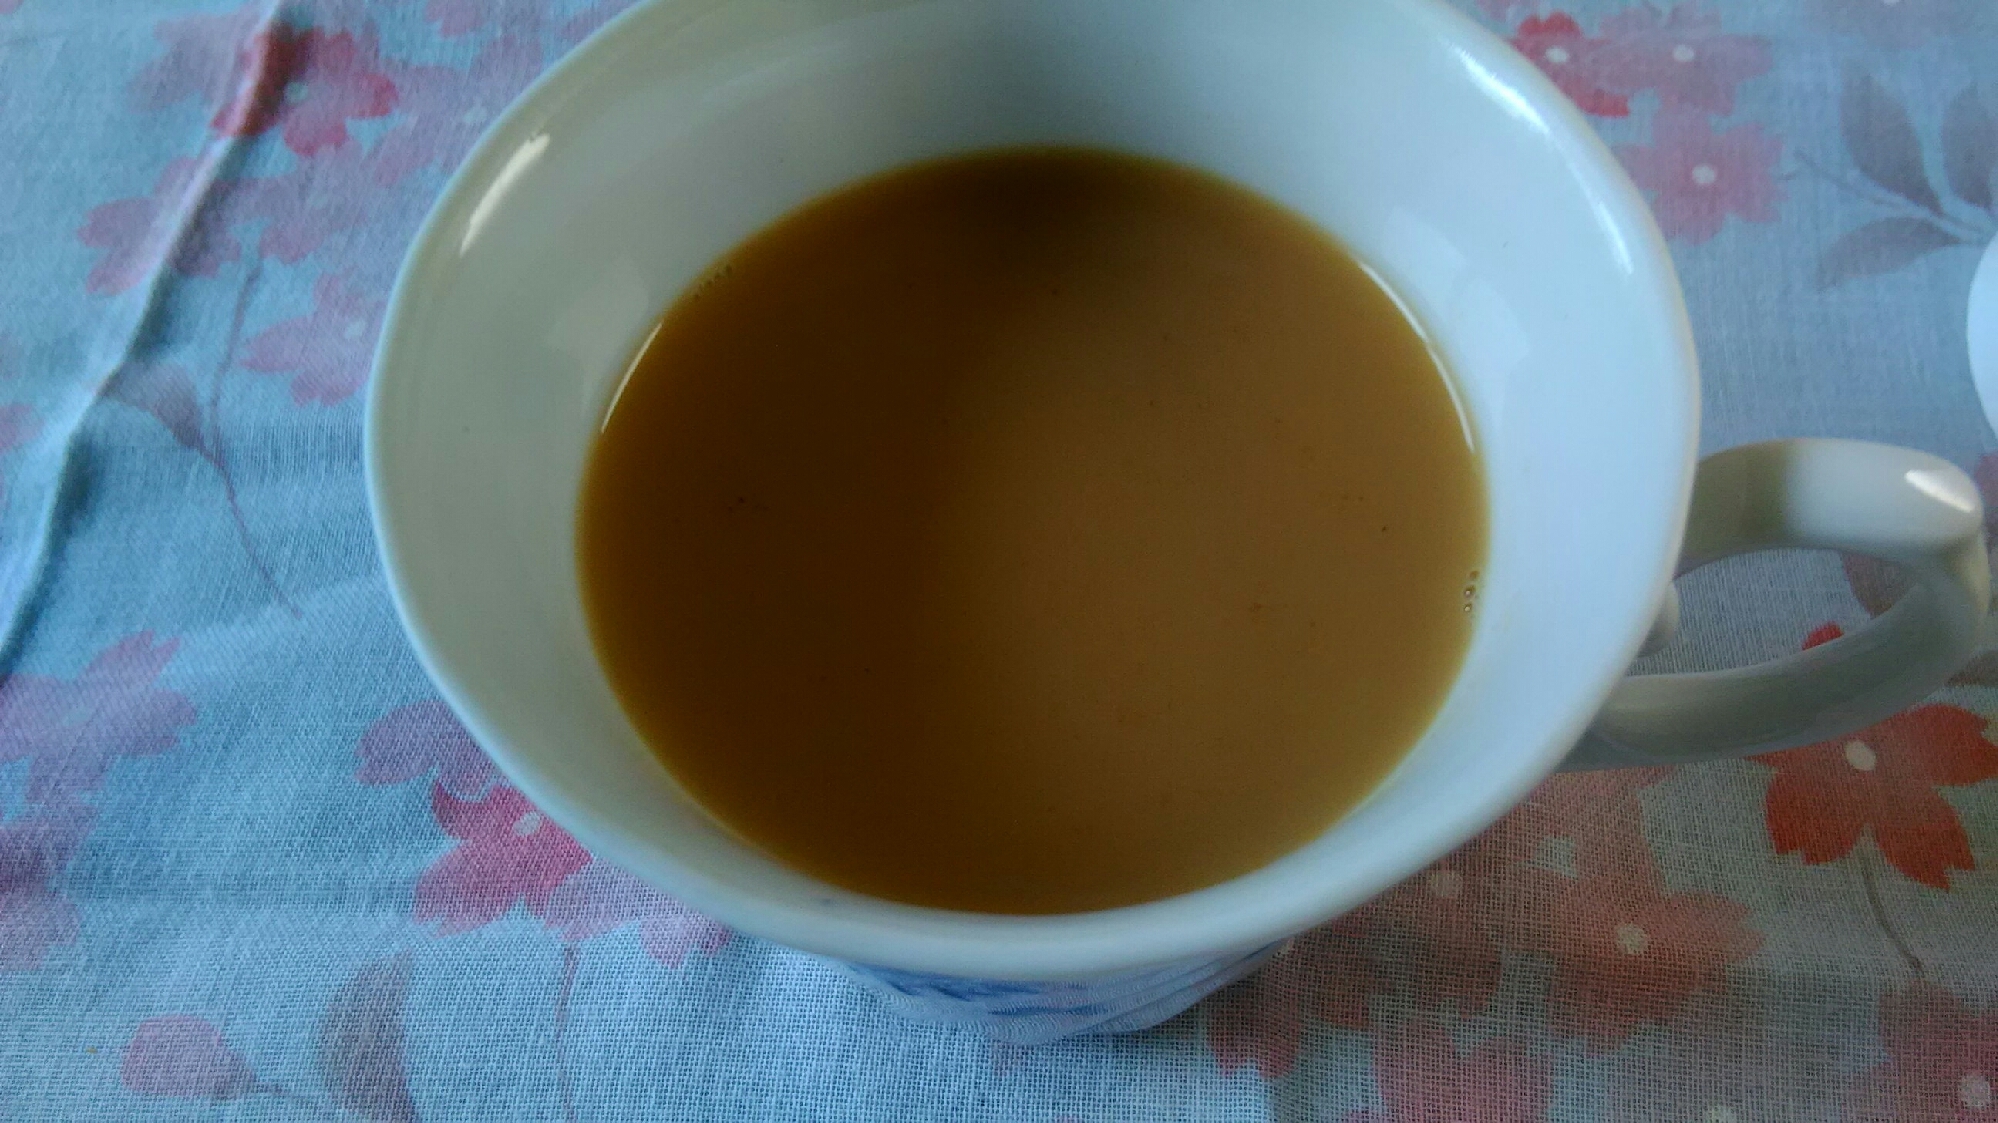 スキムミルクで生姜紅茶